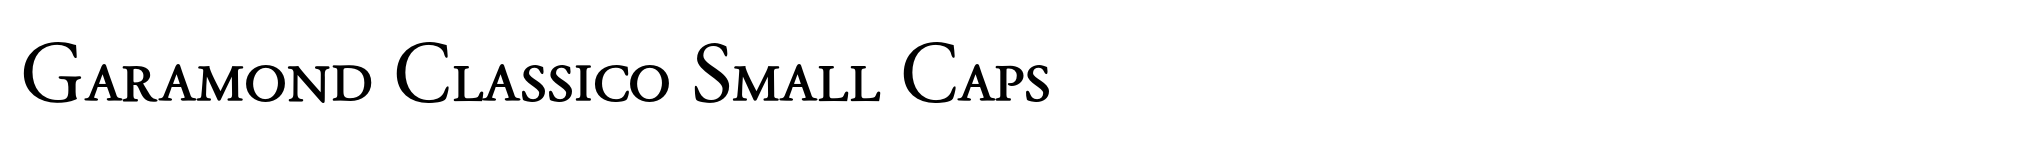 Garamond Classico Small Caps image